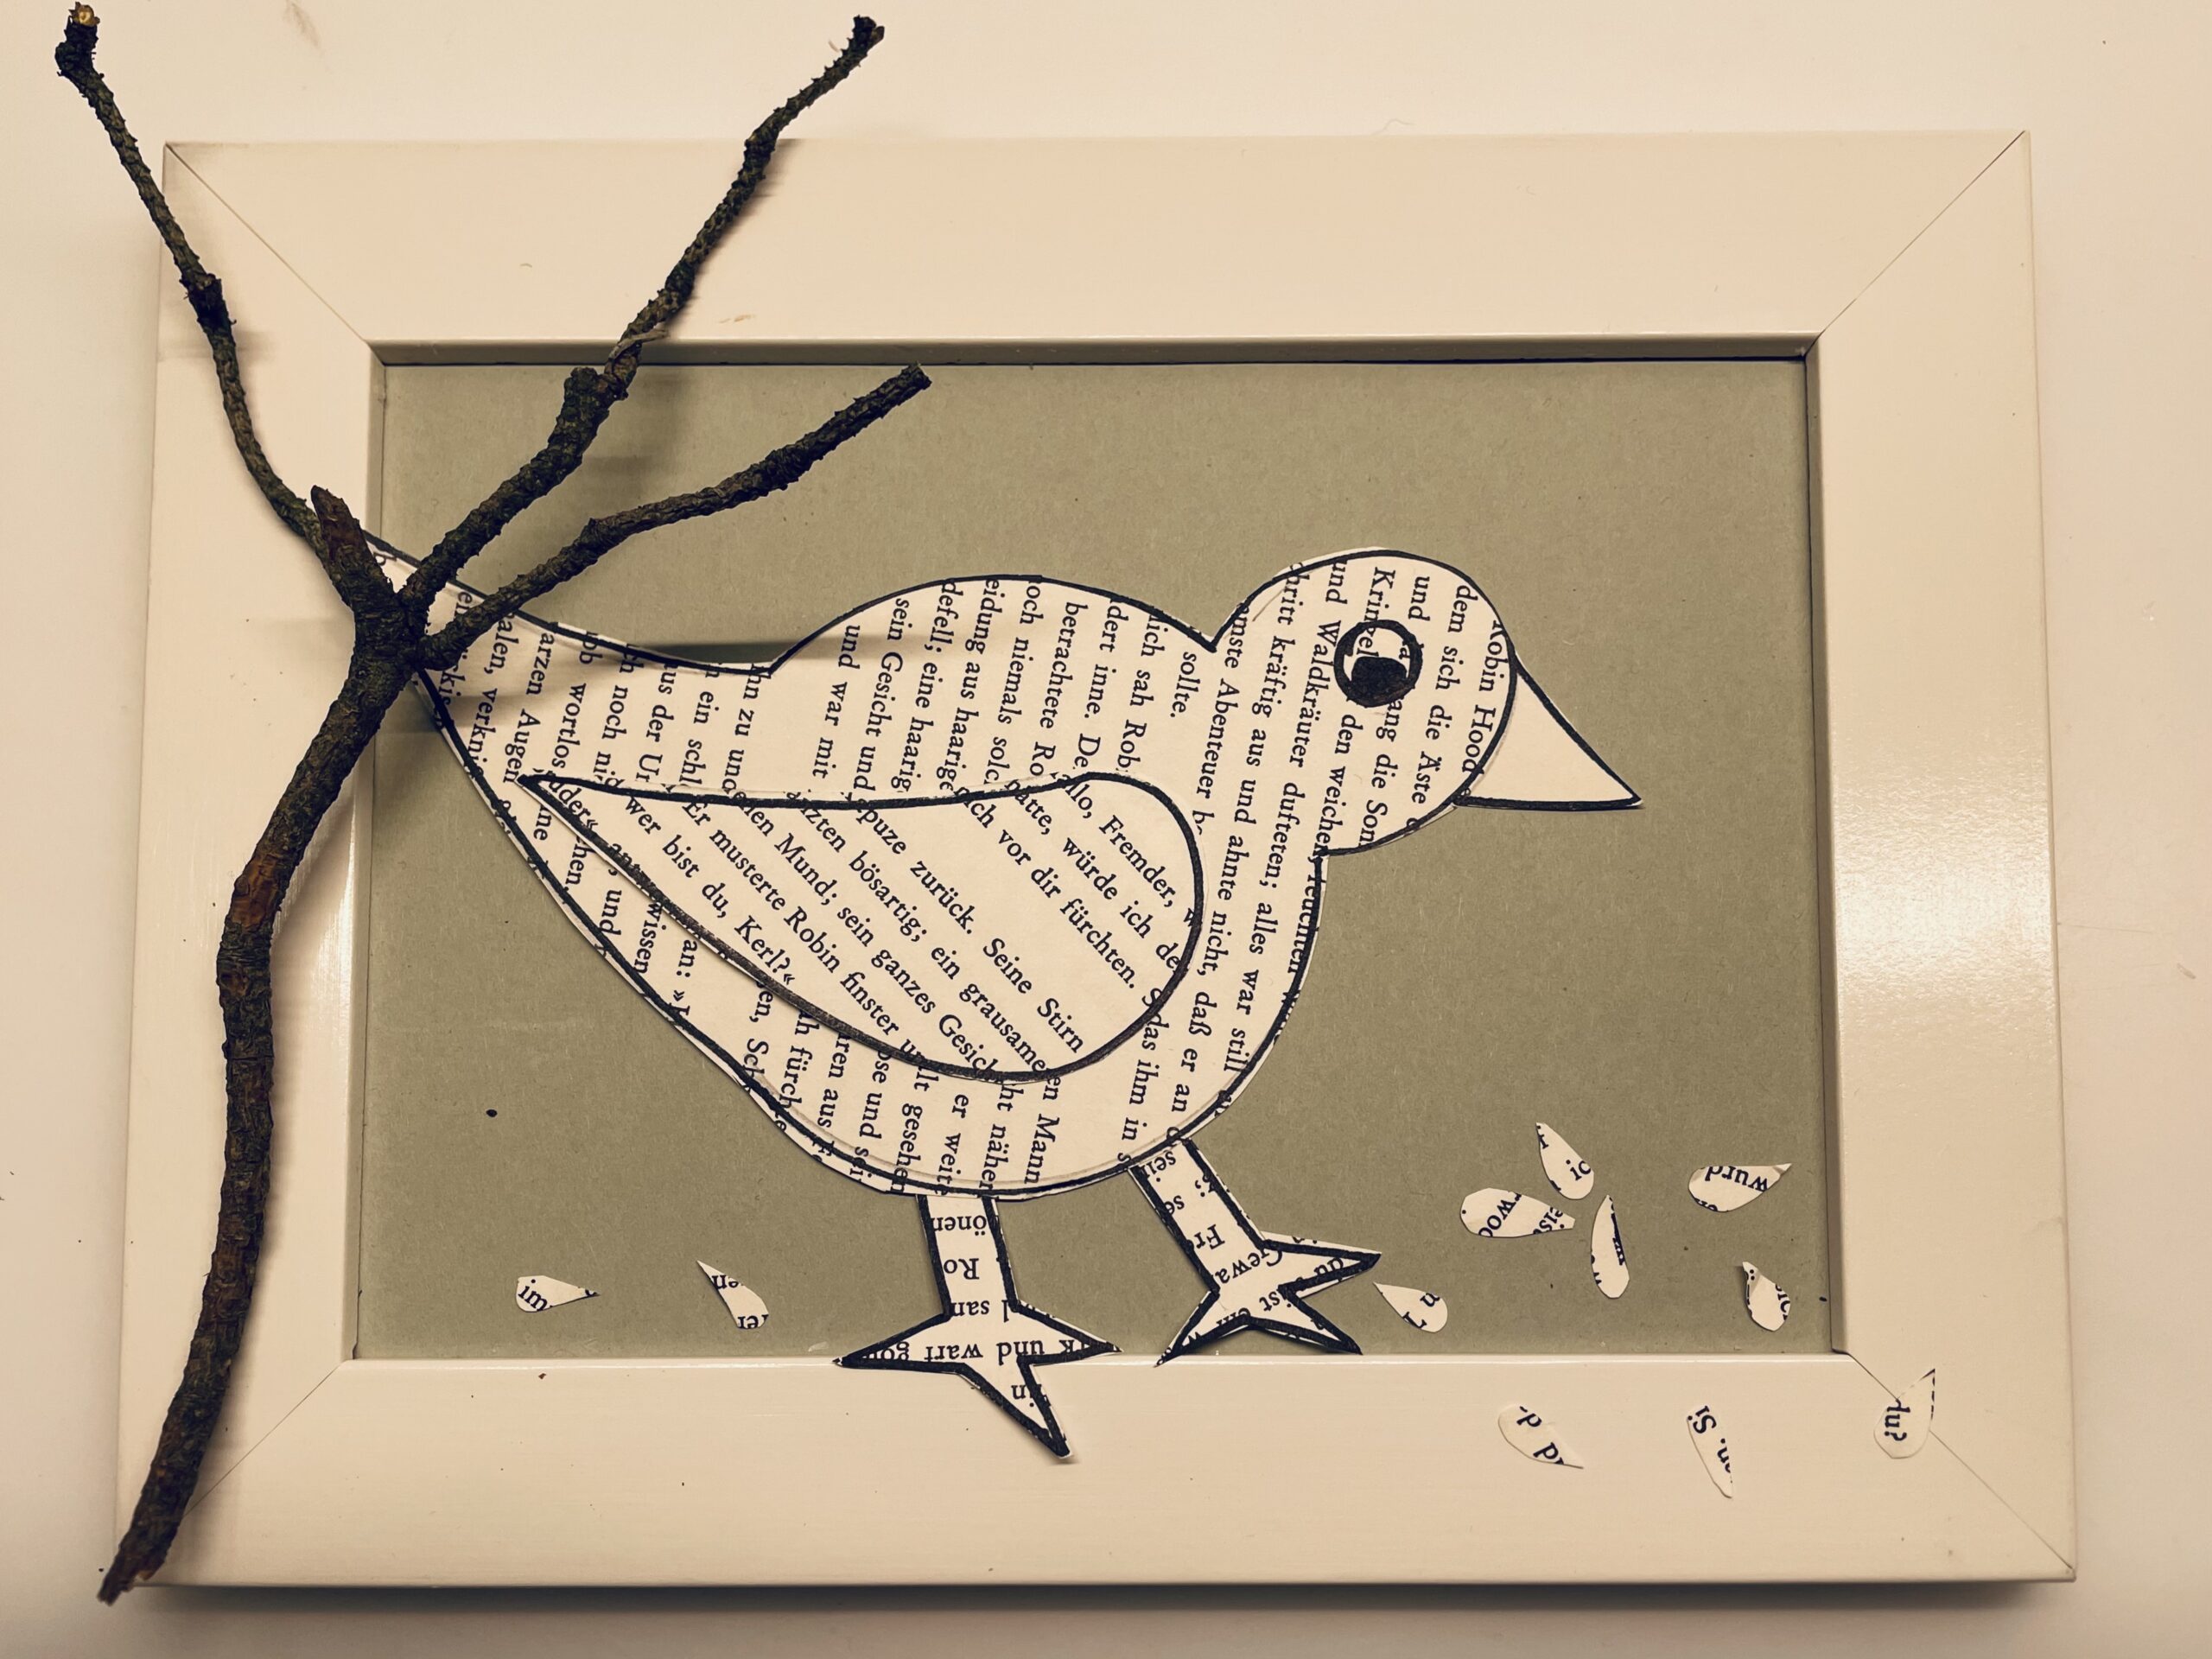 Bild zum Schritt 17 für das Bastel- und DIY-Abenteuer für Kinder: 'Gestaltet euren Vogel wie er euch gefällt.'